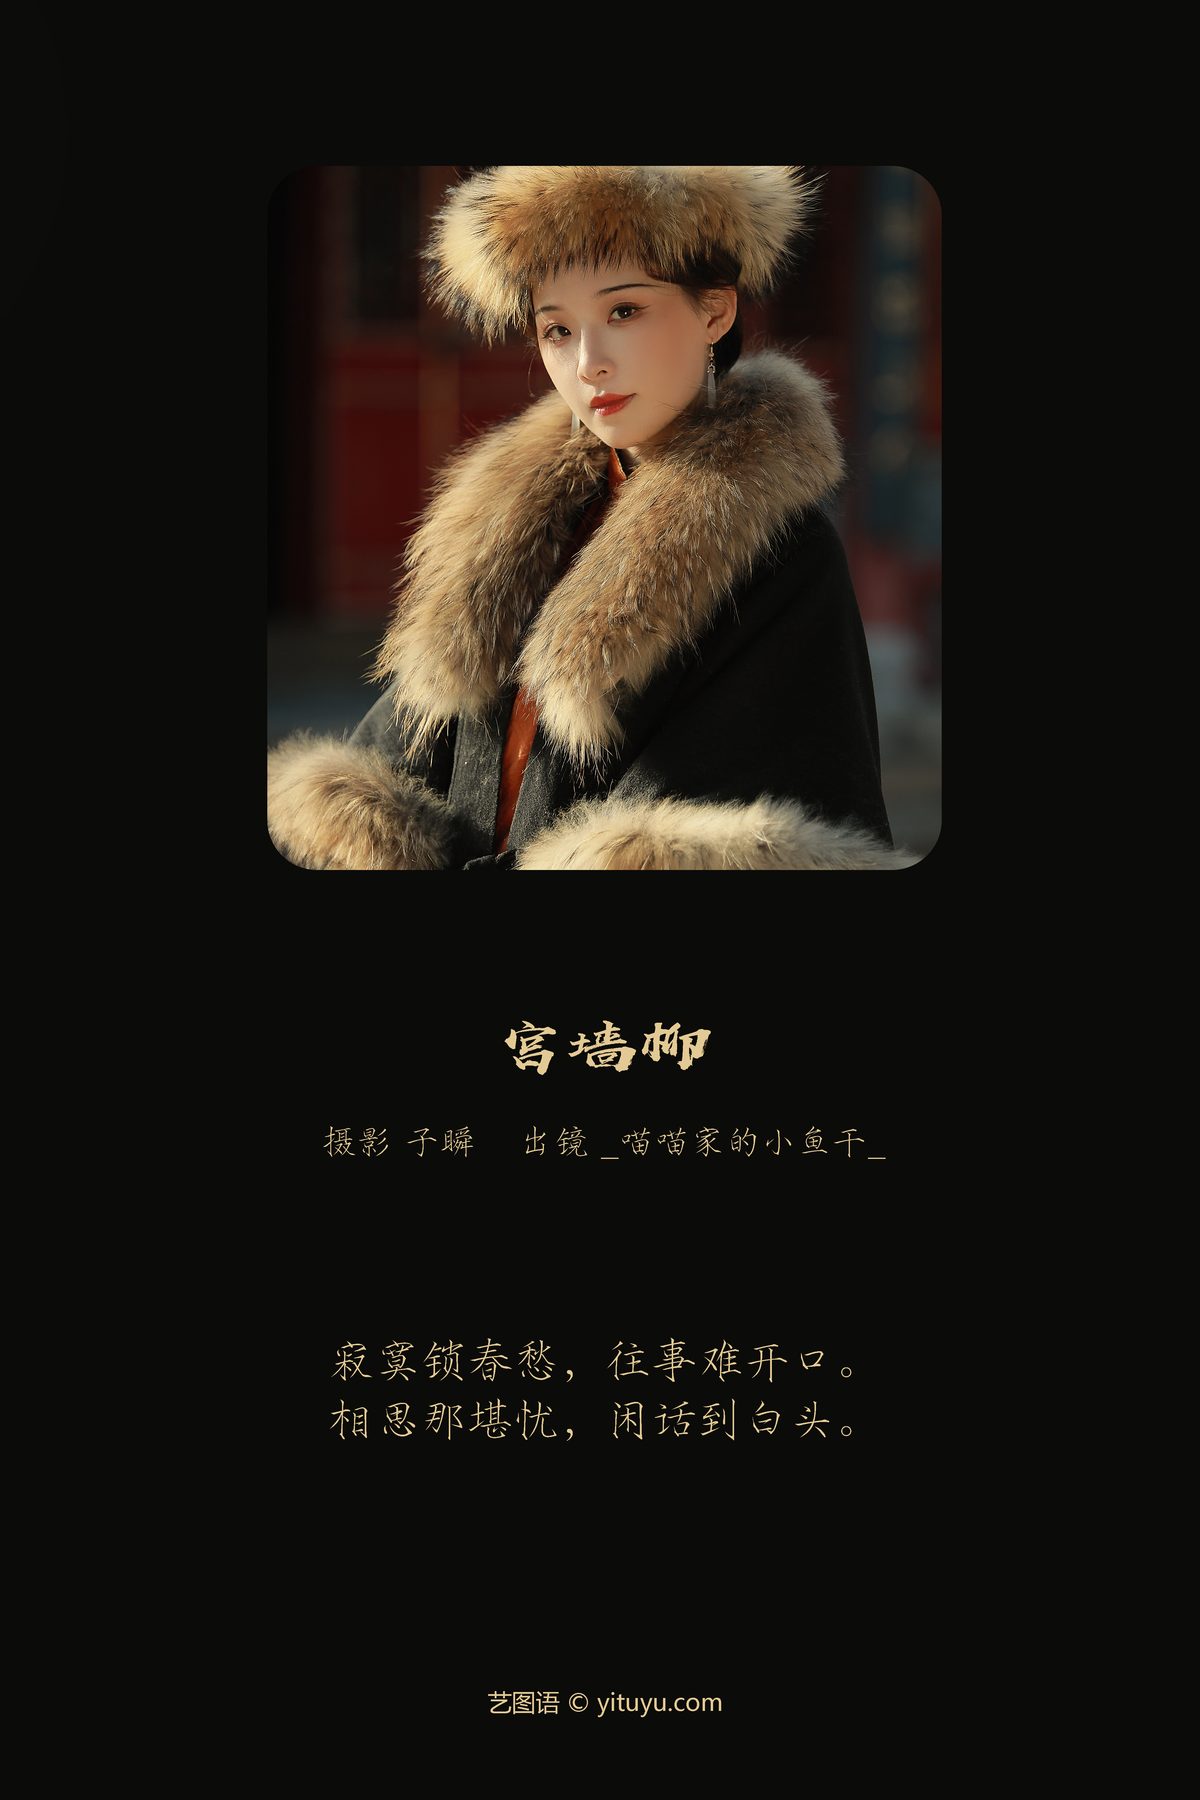 YiTuYu艺图语 Vol 3721 Miao Miao Jia De Xiao Yu Gan 0001 0302081419.jpg